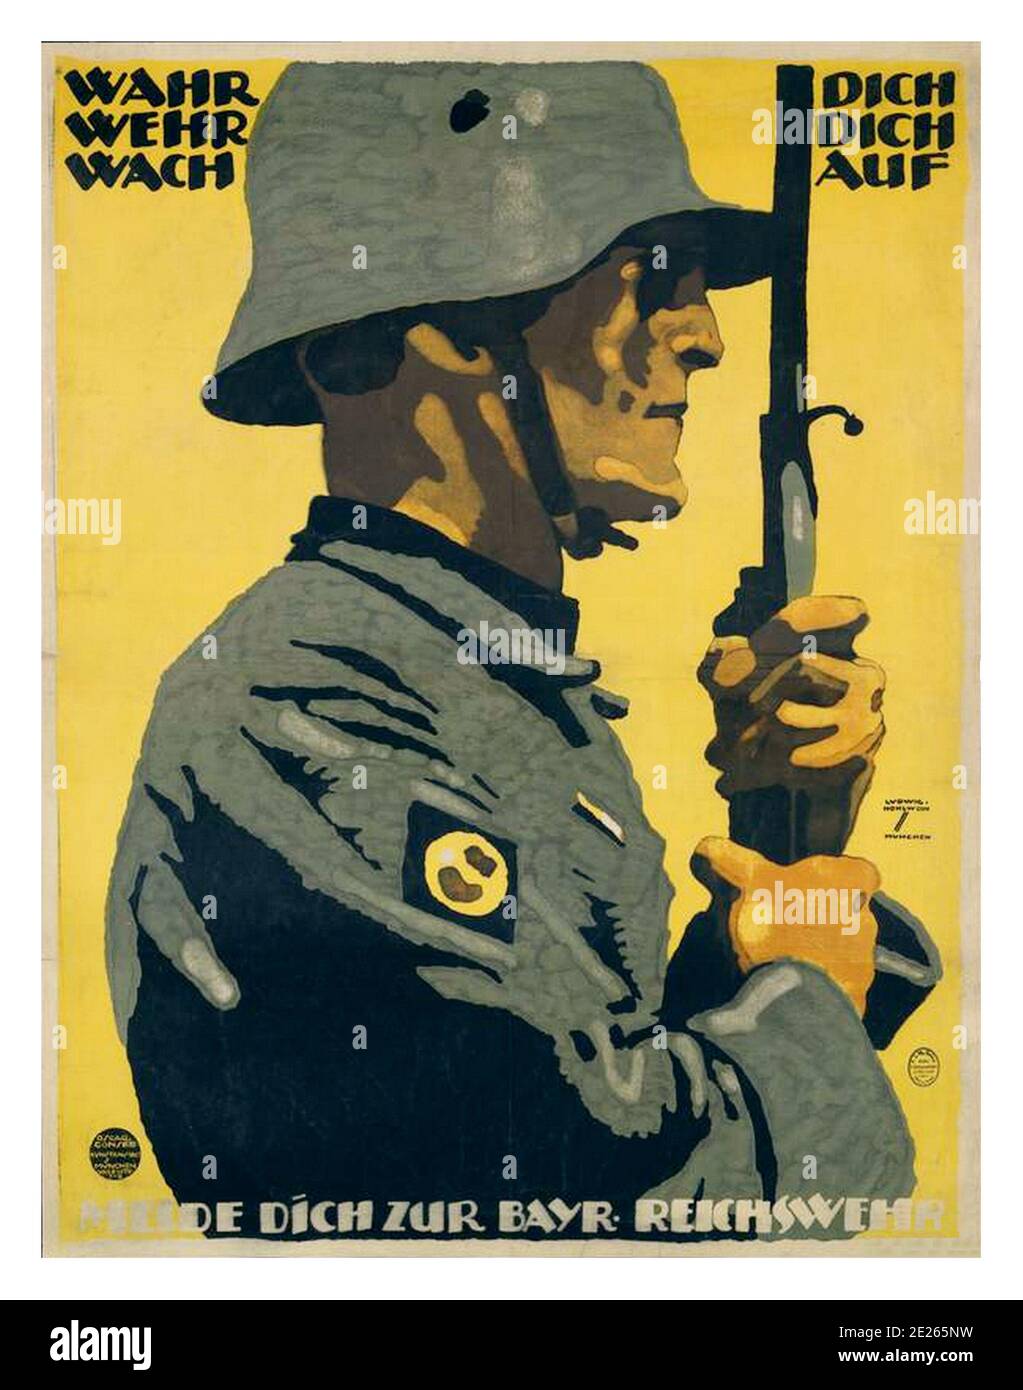 WW1 Deutschland Vintage Recruiting WW1 German Propaganda Poster 1918-- sich selbst treu verteidigen wach auf. Melden Sie sich bei der Bayerischen Reichswehr. WEH WEH tch Wach on. Melde dich zur Bayr-Reichswehr erster Weltkrieg Stockfoto